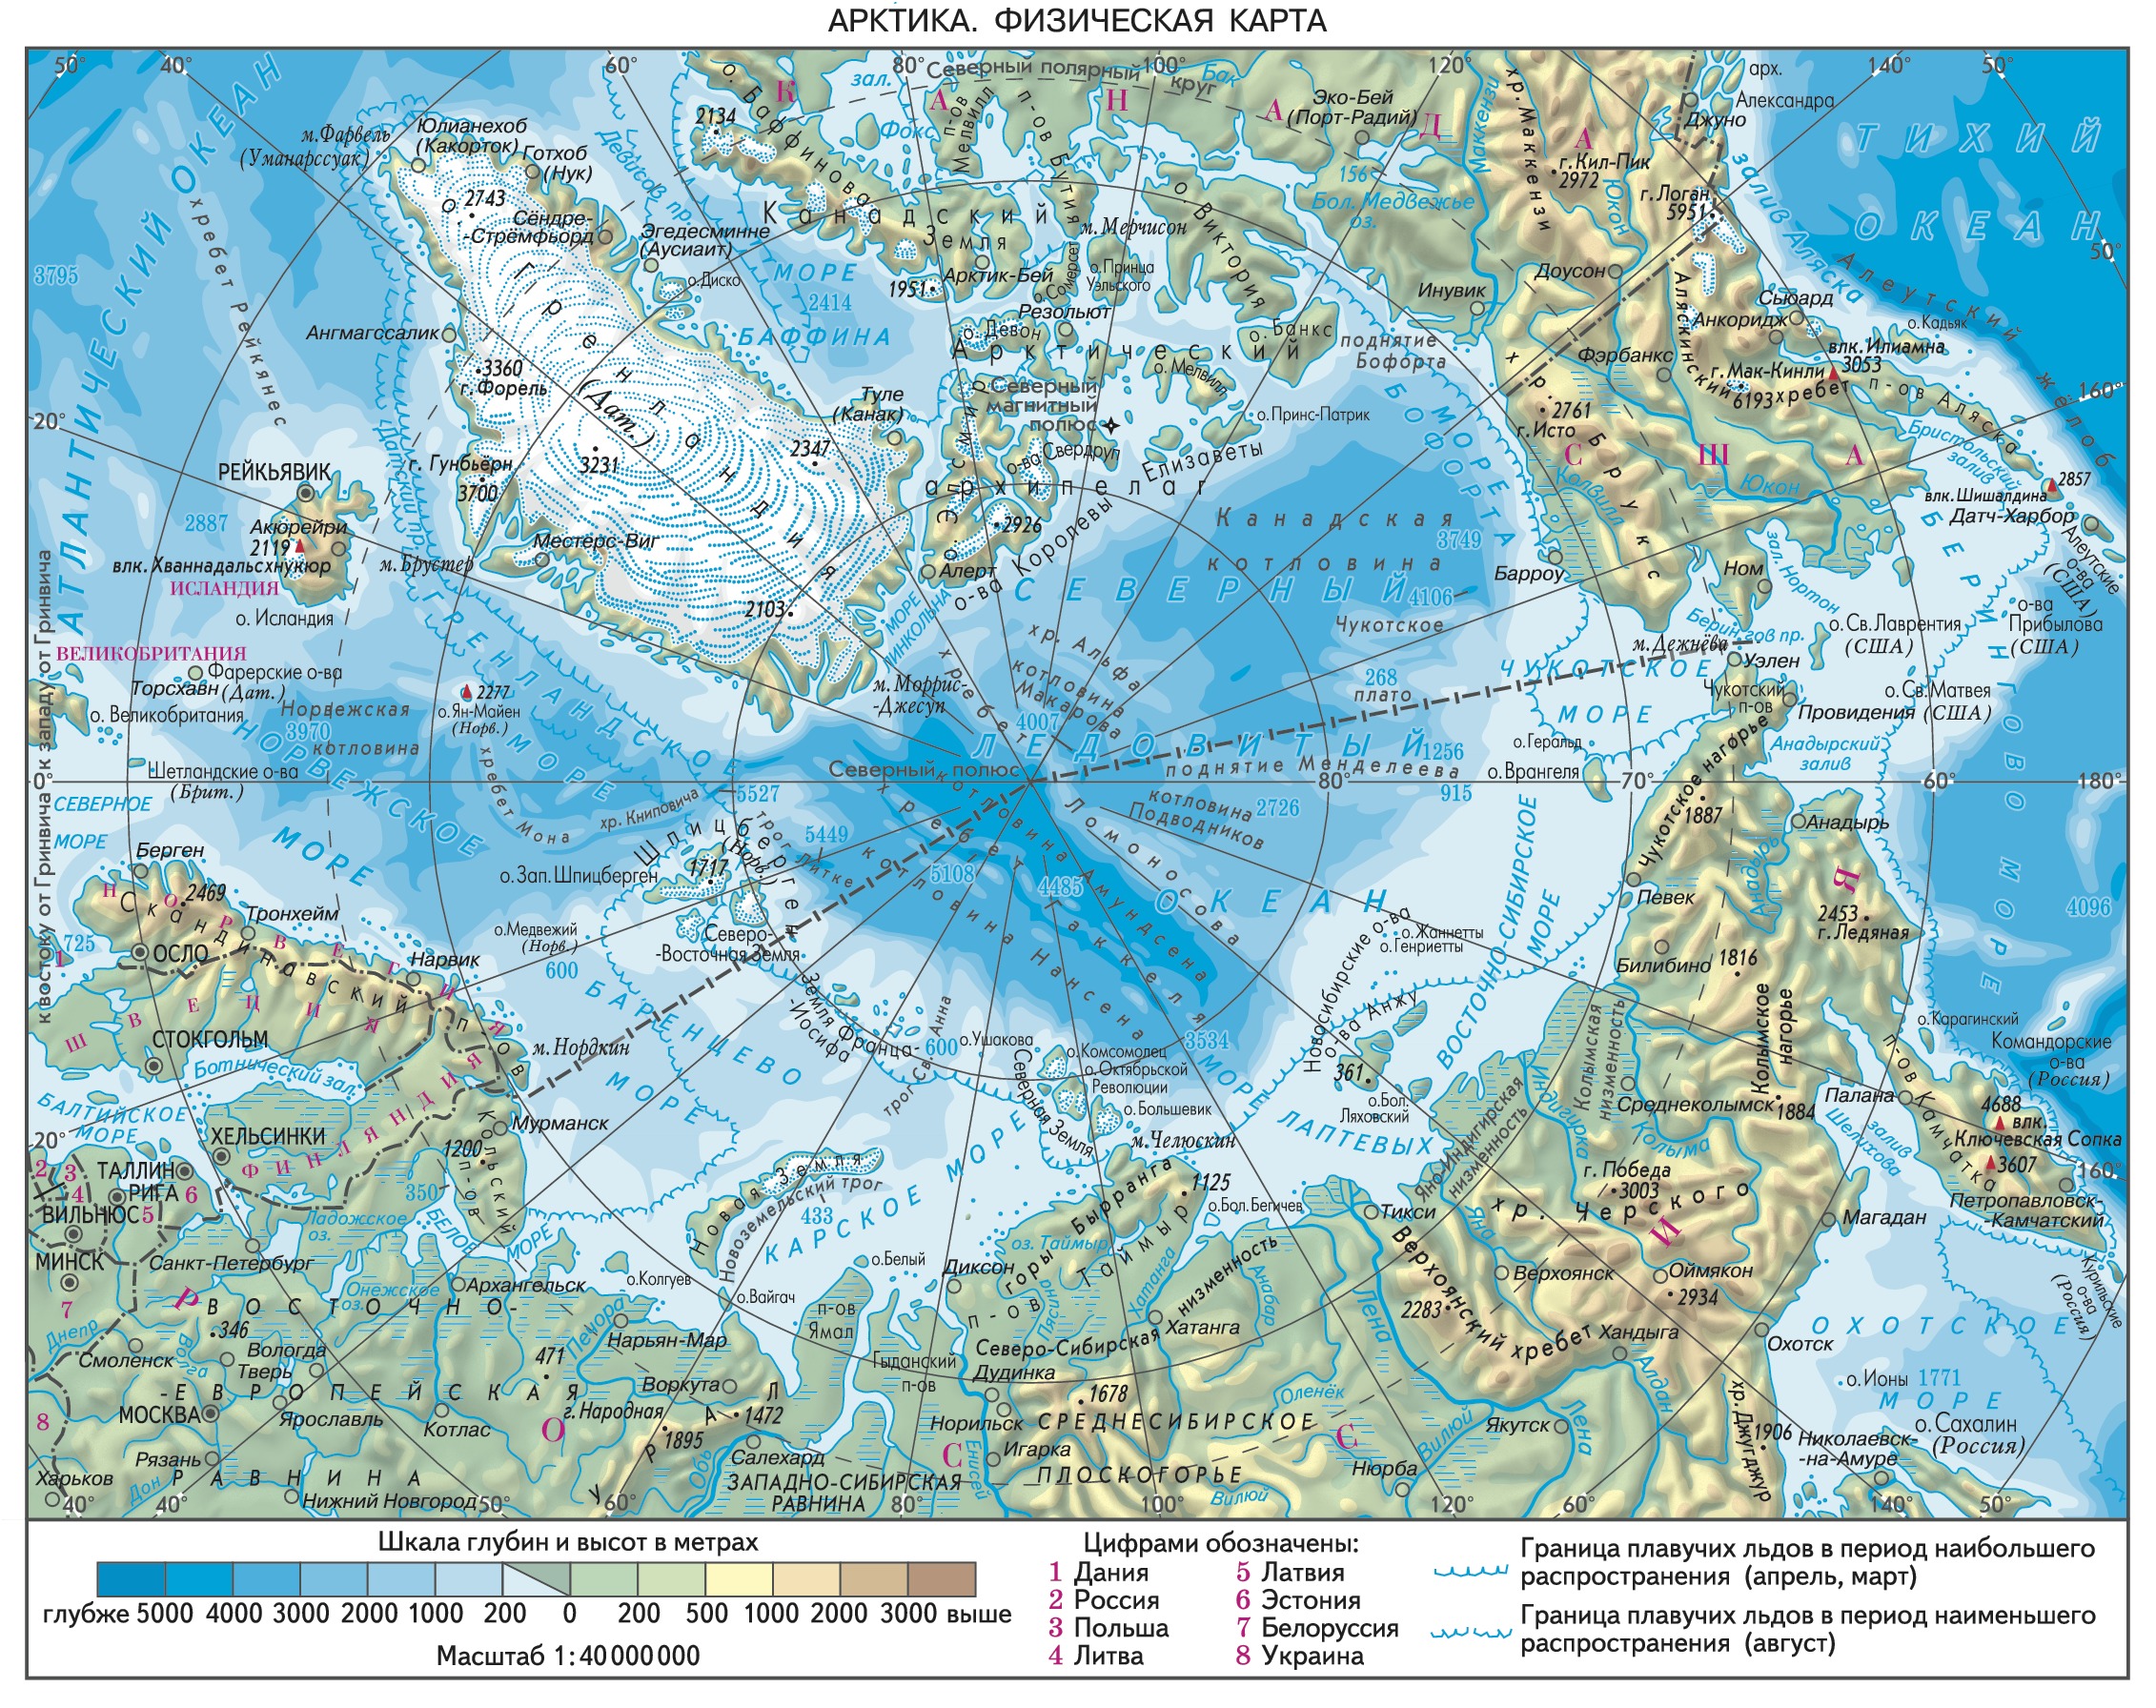 Моря северного ледовитого океана находятся на. Северный Ледовитый океан на карте физическая карта. Карта Северного Ледовитого океана подробная. Северный Ледовитый океан физическая карта границы. Физическая карта Северного Ледовитого океана.